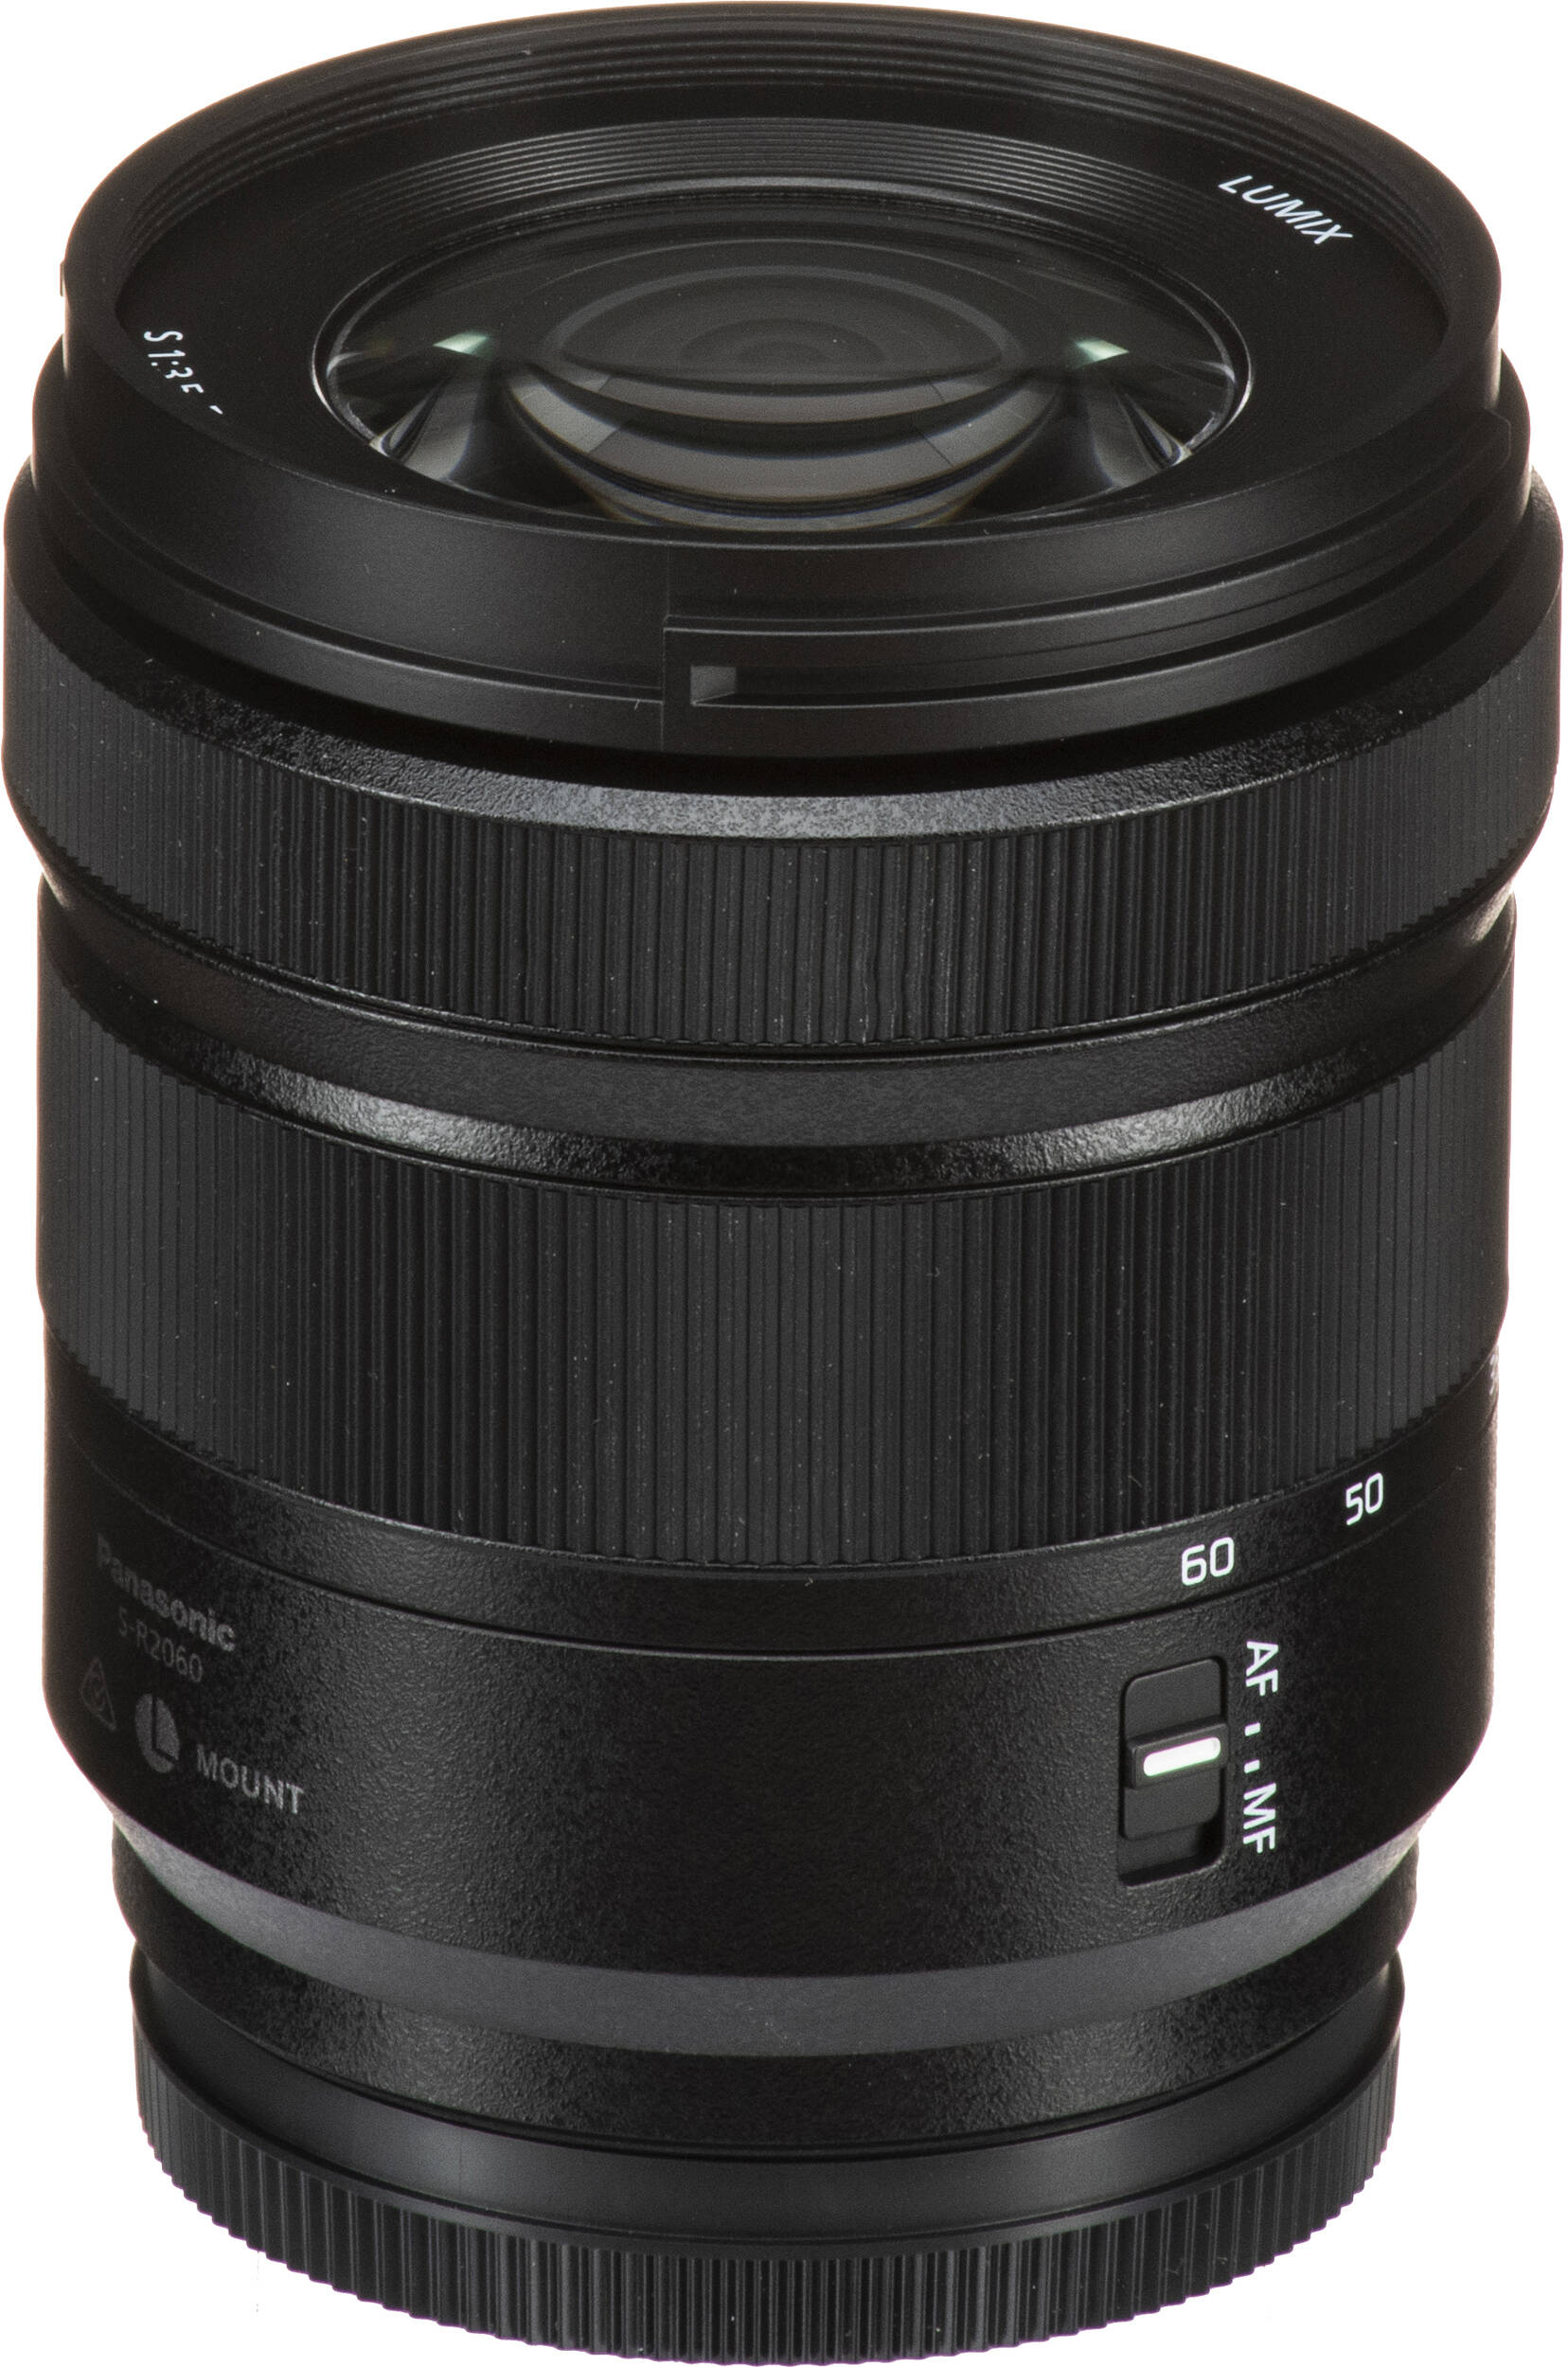 Фотоапарат Panasonic Lumix DC-S9 + 20-60mm f/3.5-5.6 Jet Black (DC-S9KE-K)фото24